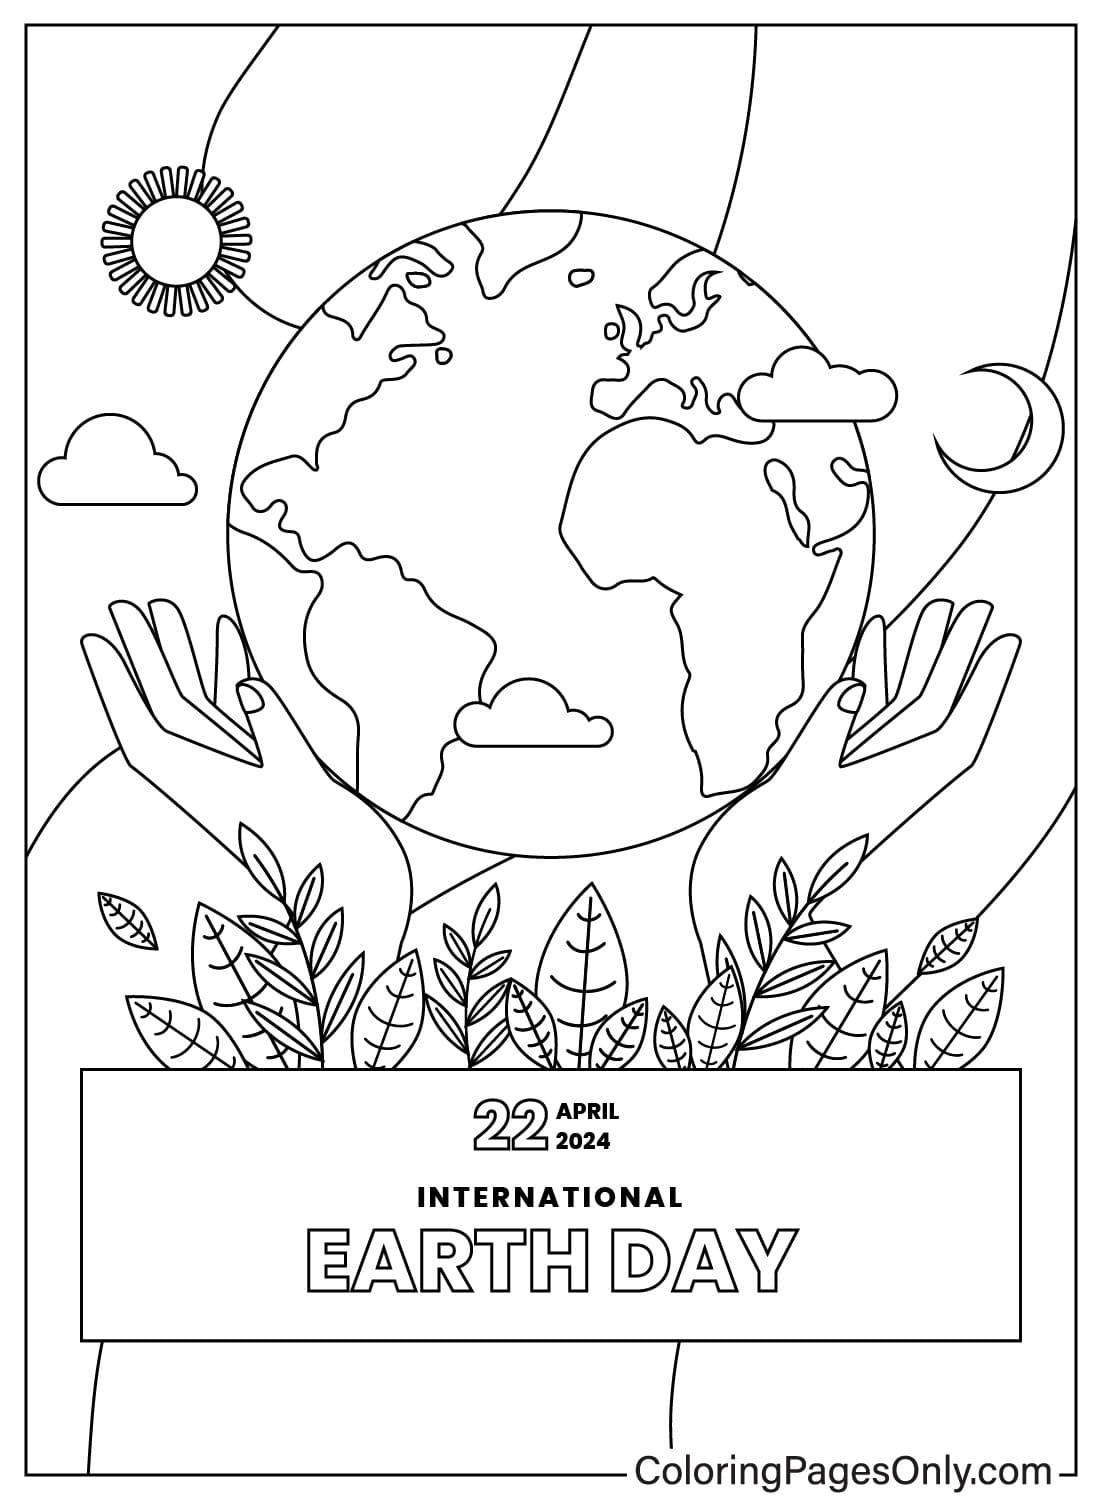 Página para colorear del Día de la Tierra del Día de la Tierra